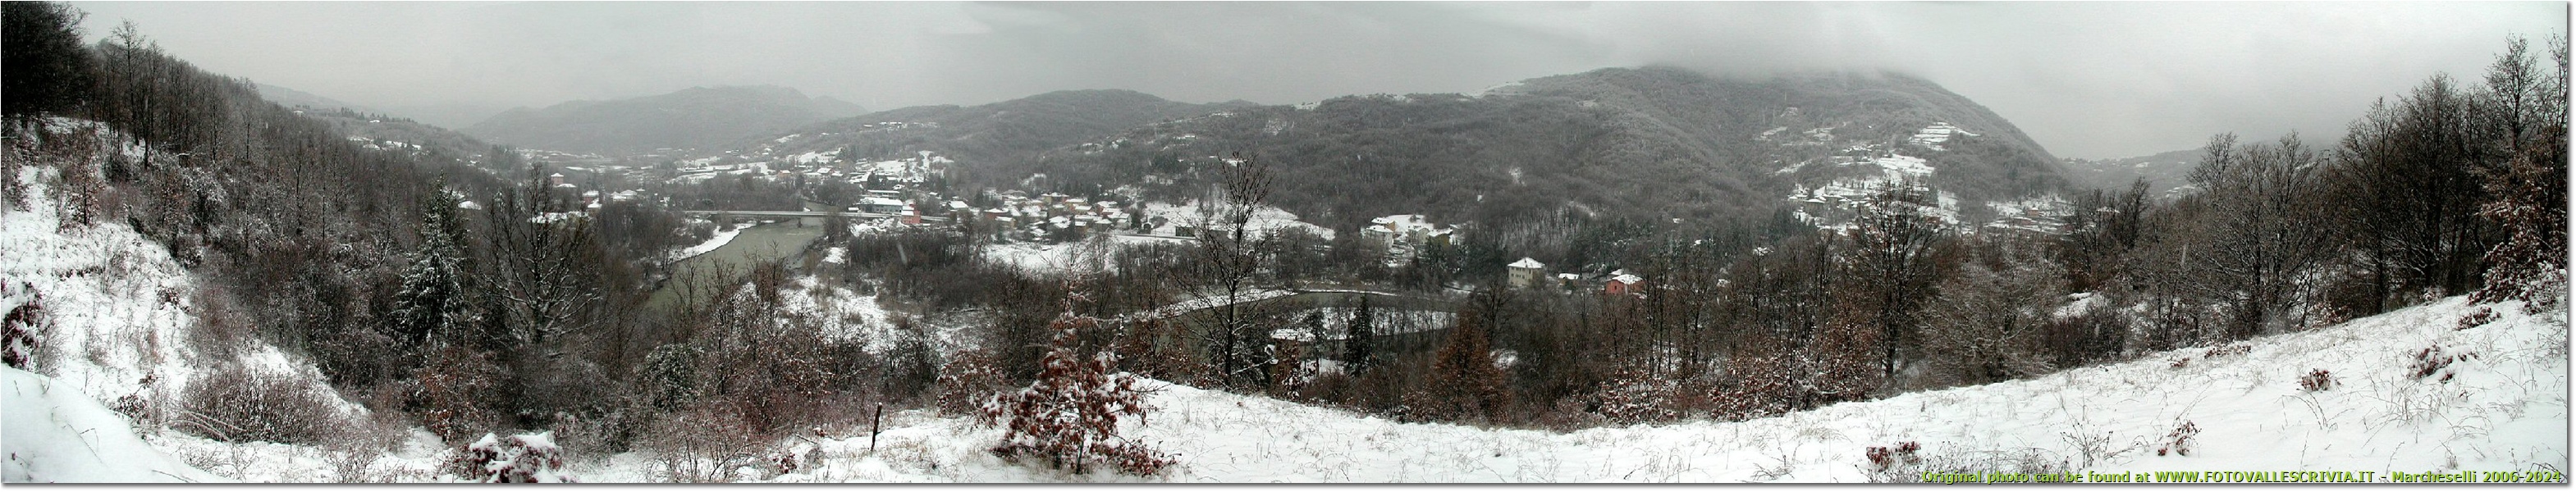 Da Casella a San Bartolomeo: nevicata del 26 dicembre - Casella - 2005 - Panorami - Inverno - Olympus Camedia 3000